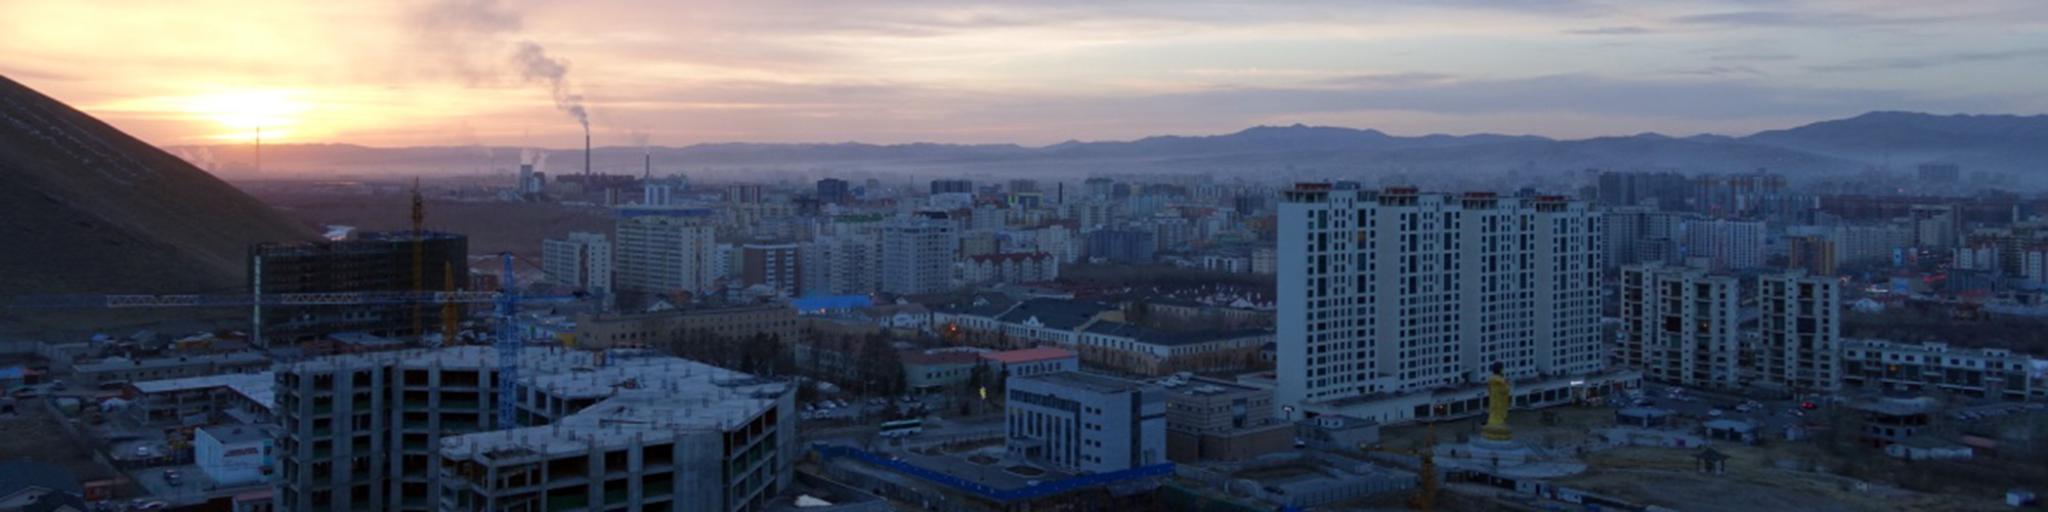 View over Ulaanbaatar in smog